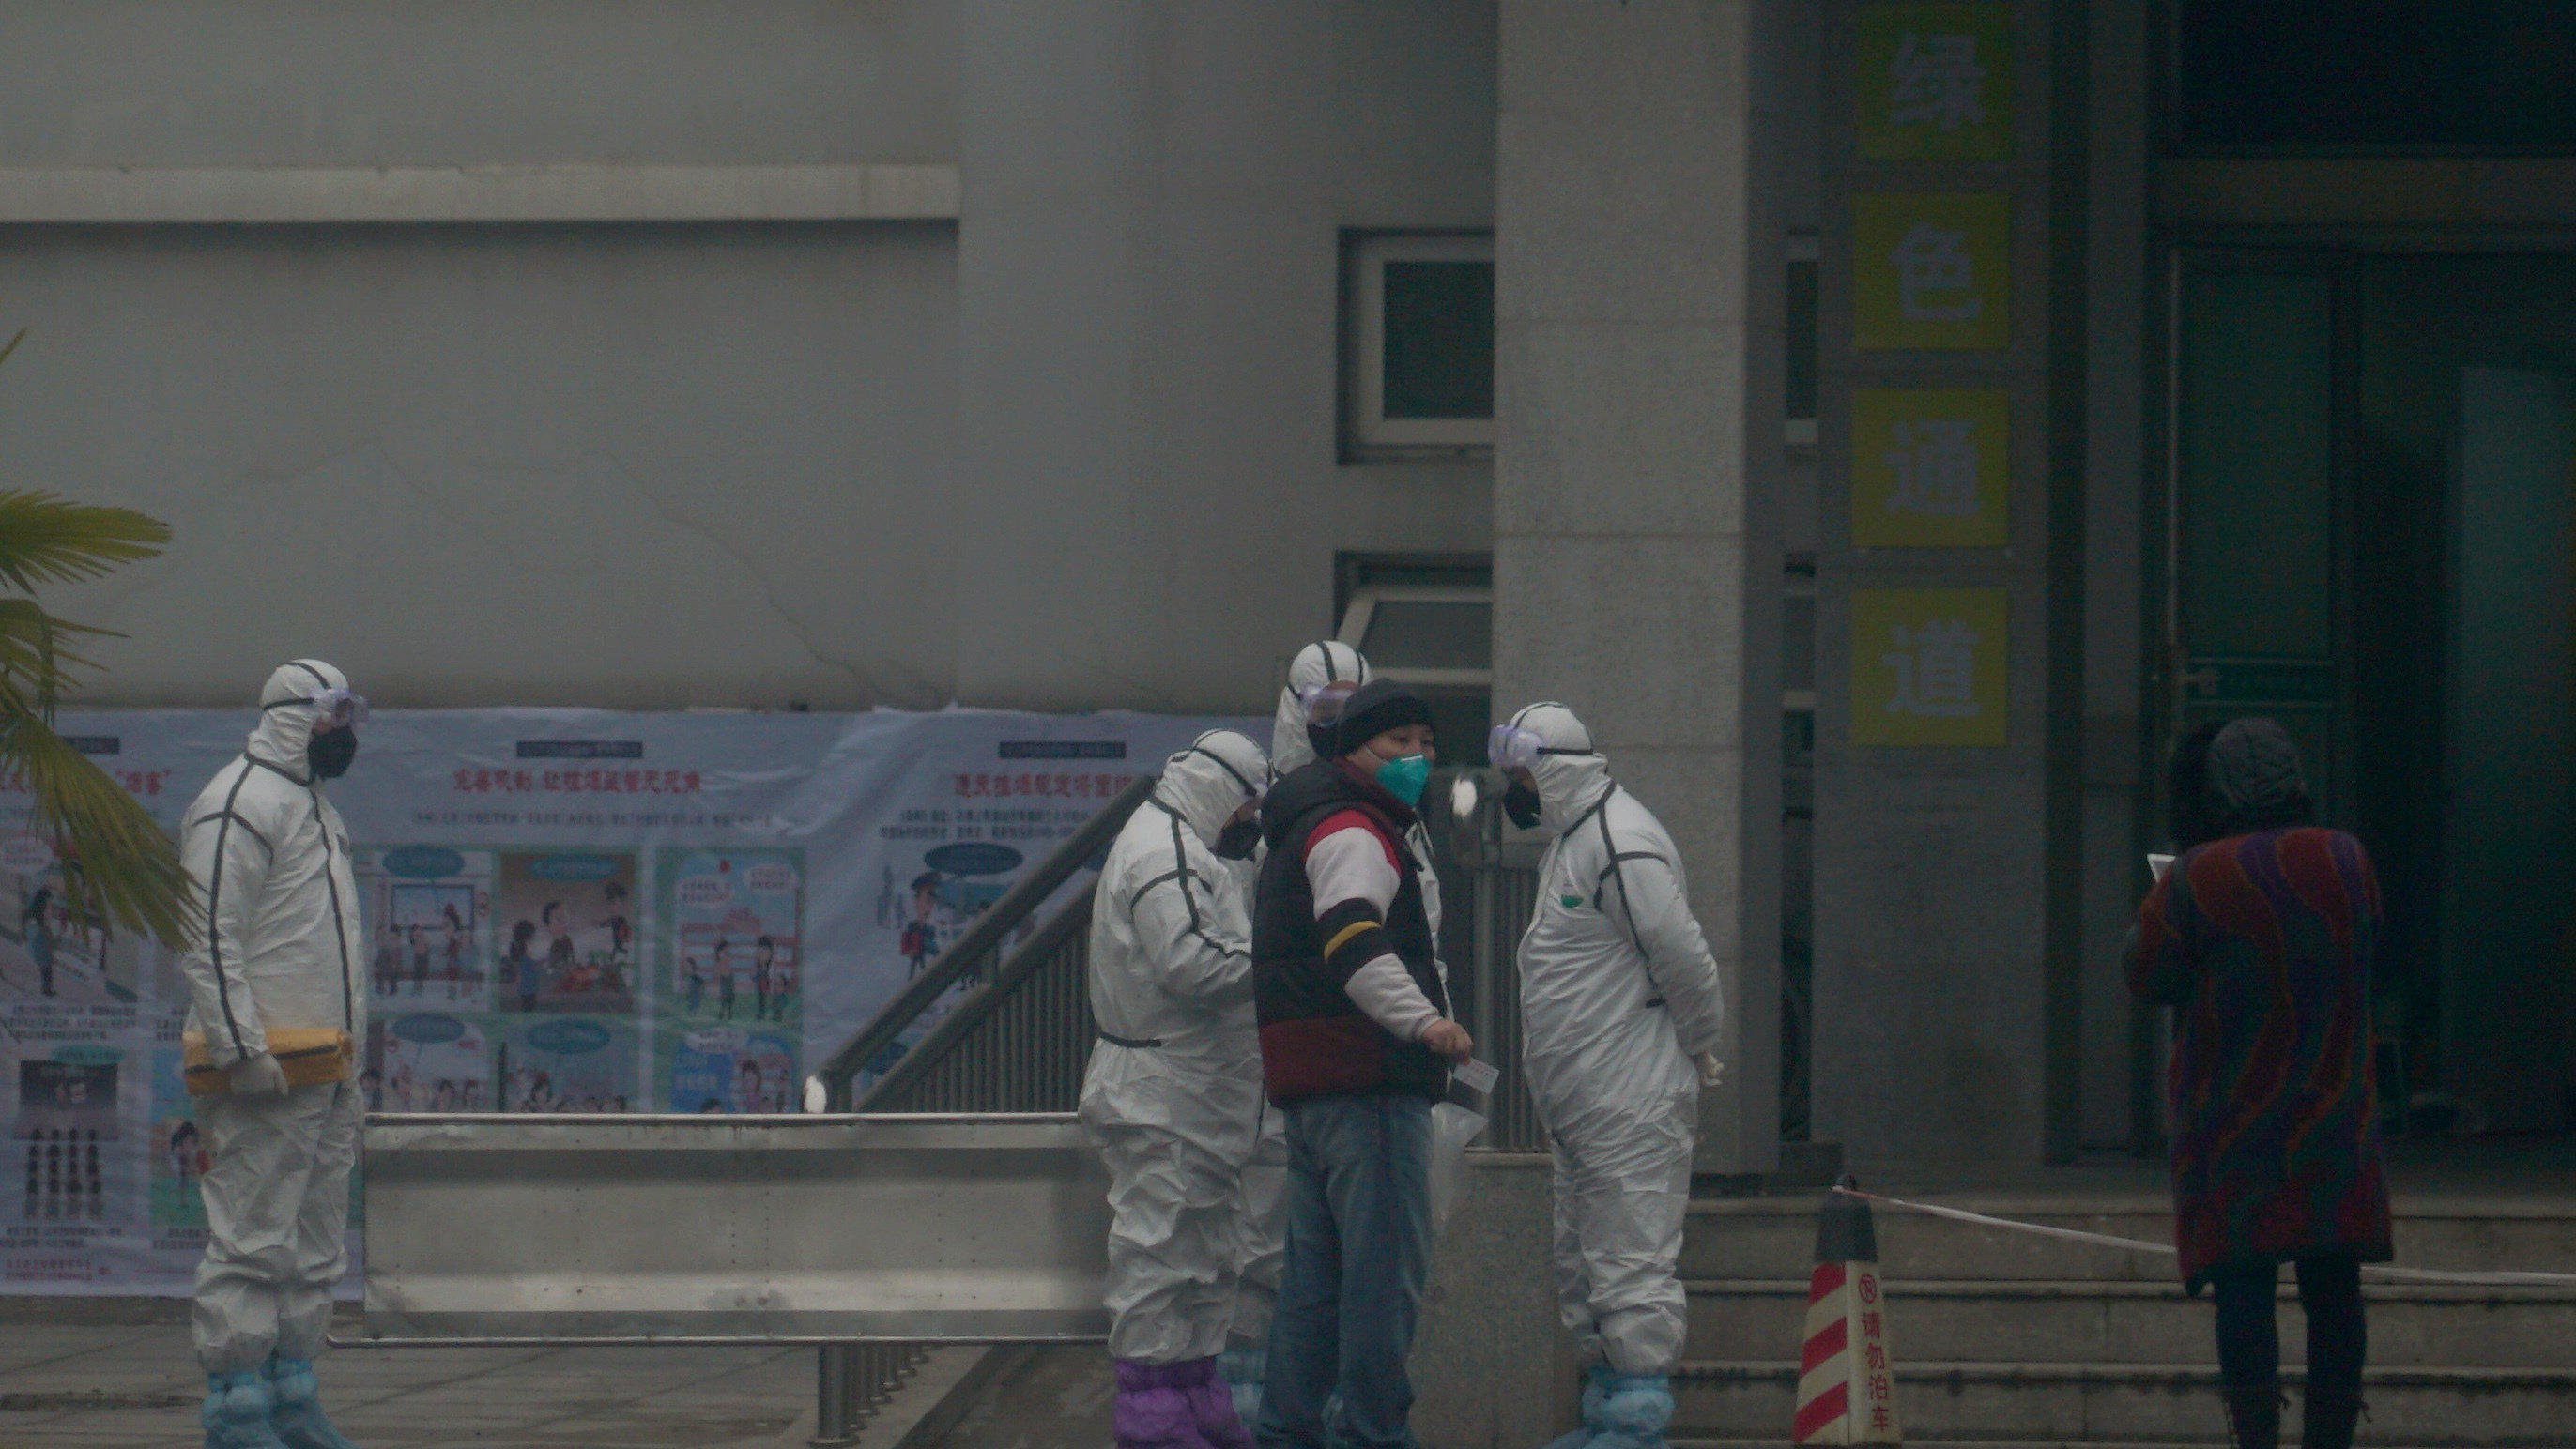 21.01.2020, China, Wuhan: Mitarbeiter in Schutzanzügen stehen vor dem Wuhan Medical Treatment Center, in dem ein Patient mit Verdacht auf den neuartigen Corona-Virus behandelt wurde. Foto: Dake Kang/AP/dpa +++ dpa-Bildfunk +++